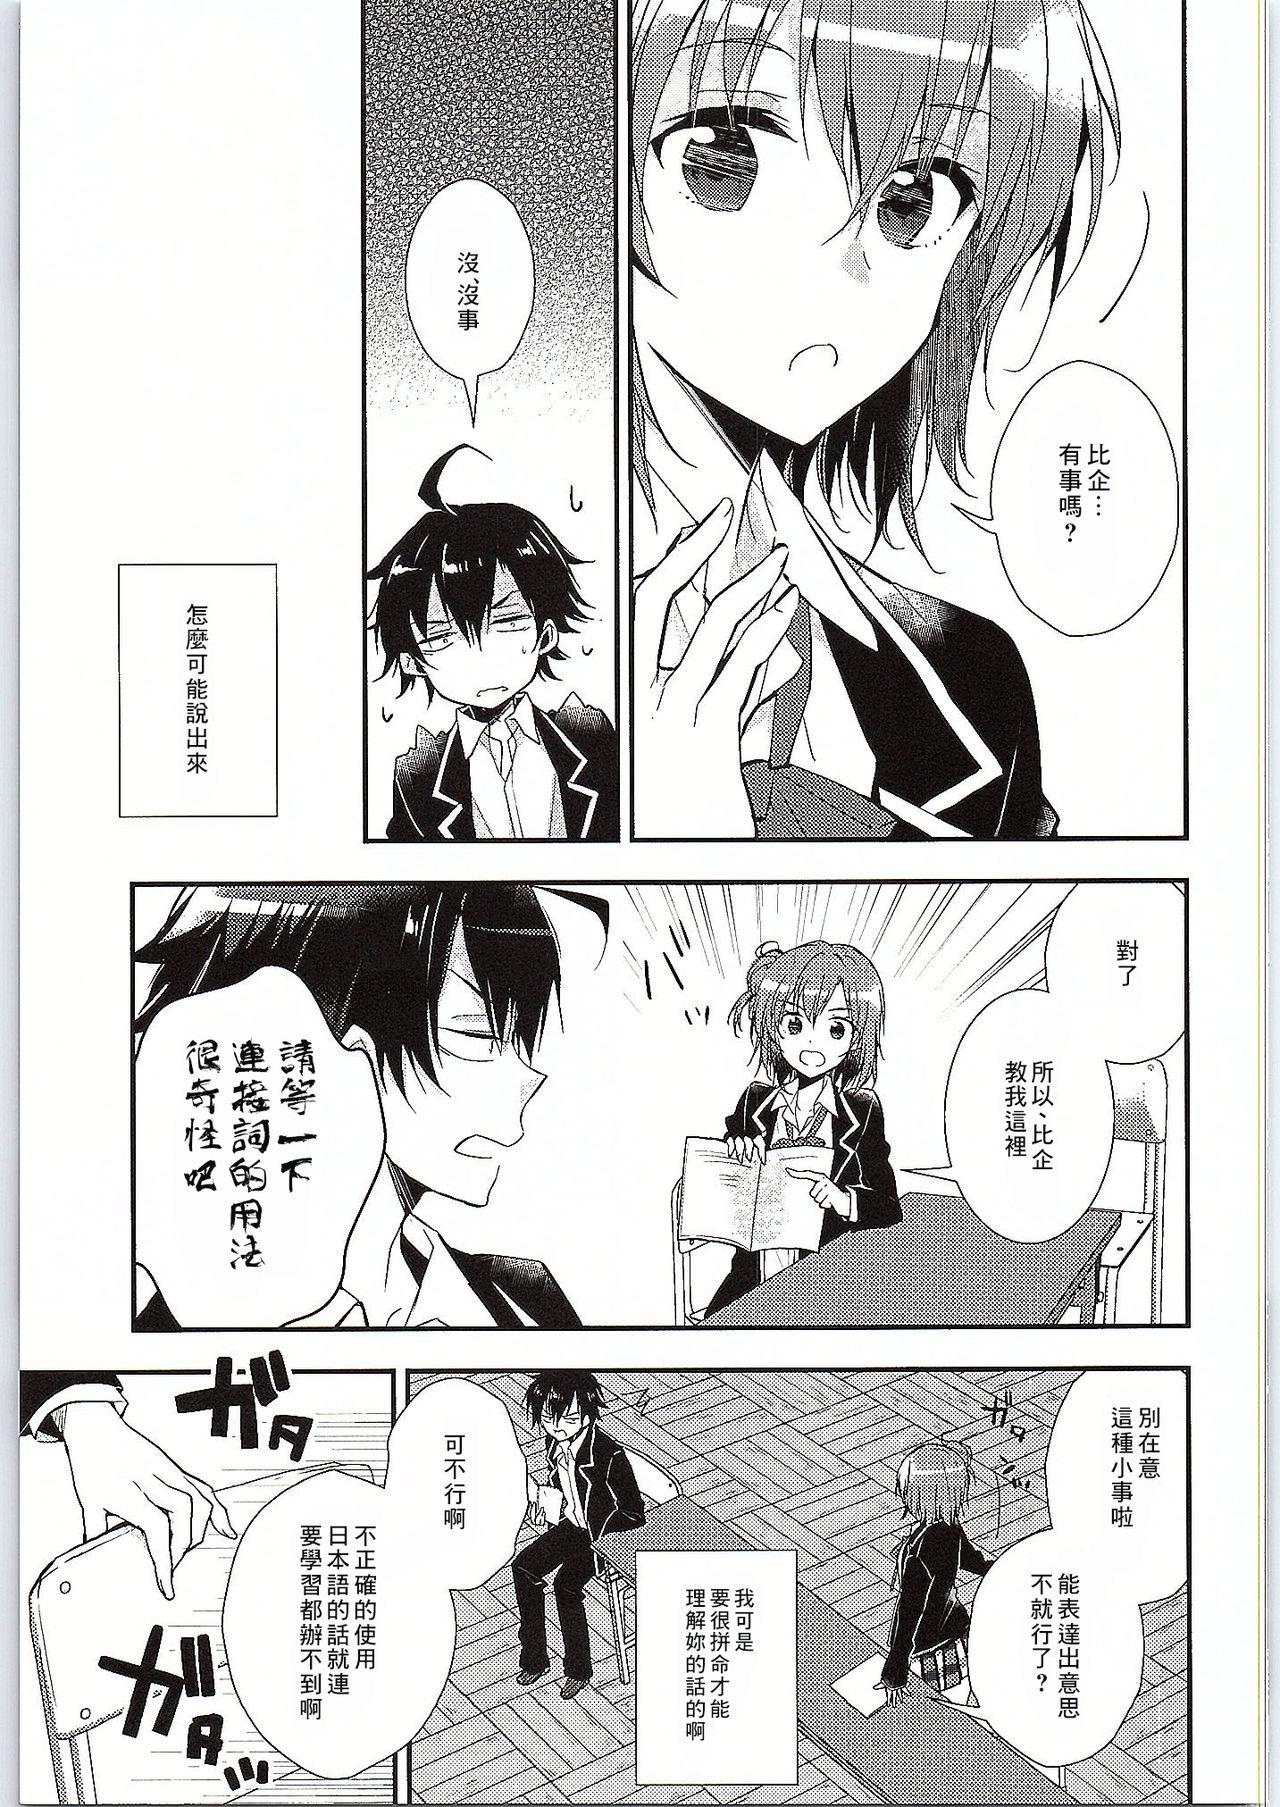 Asslicking Chotto, Yuigahama-san chika sugimasu yo. - Yahari ore no seishun love come wa machigatteiru Soapy Massage - Page 7